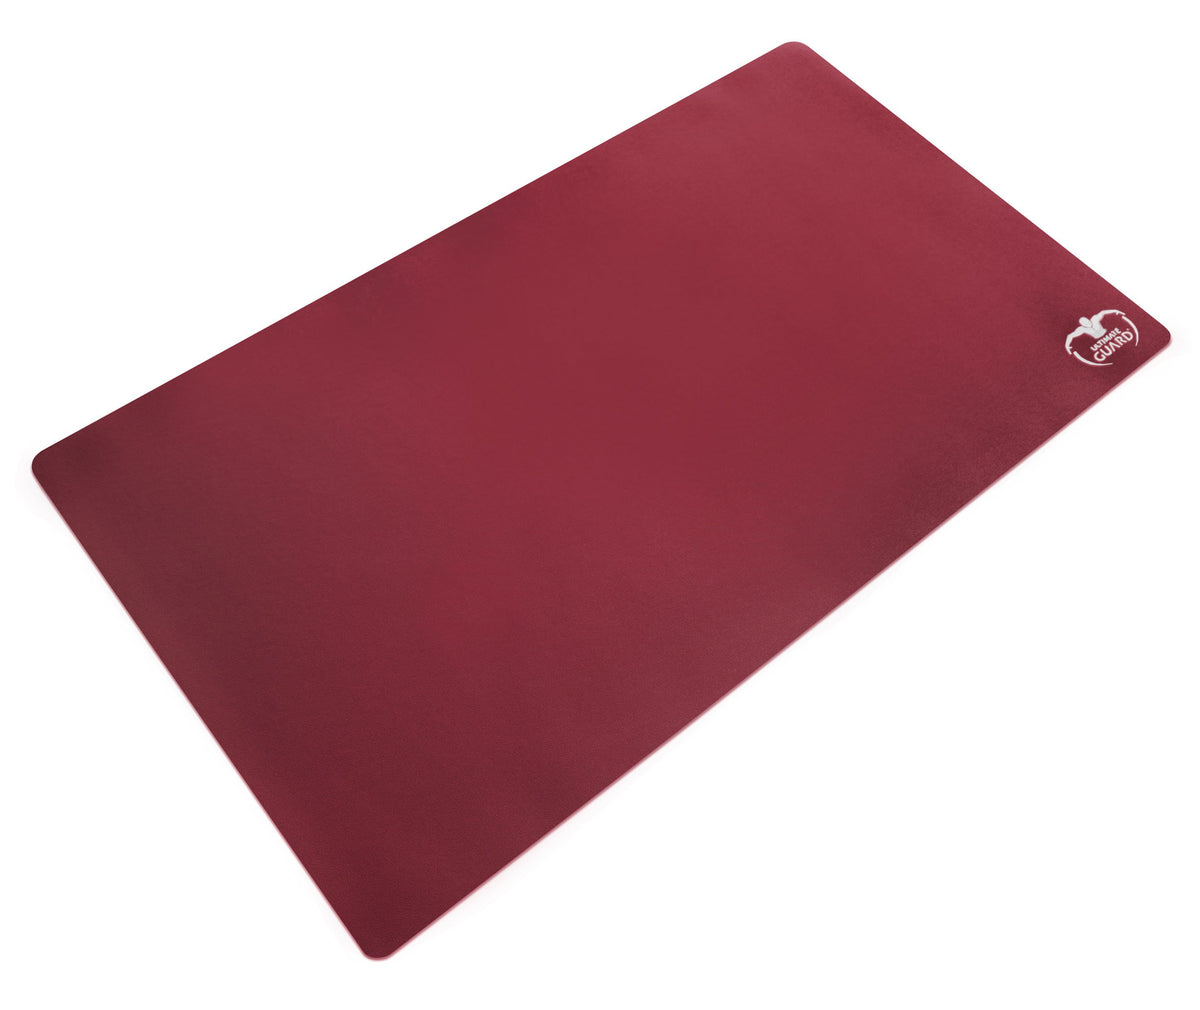 Ultimate Guard Playmat Monochrome Bordeaux Red 61 X 35 Cm